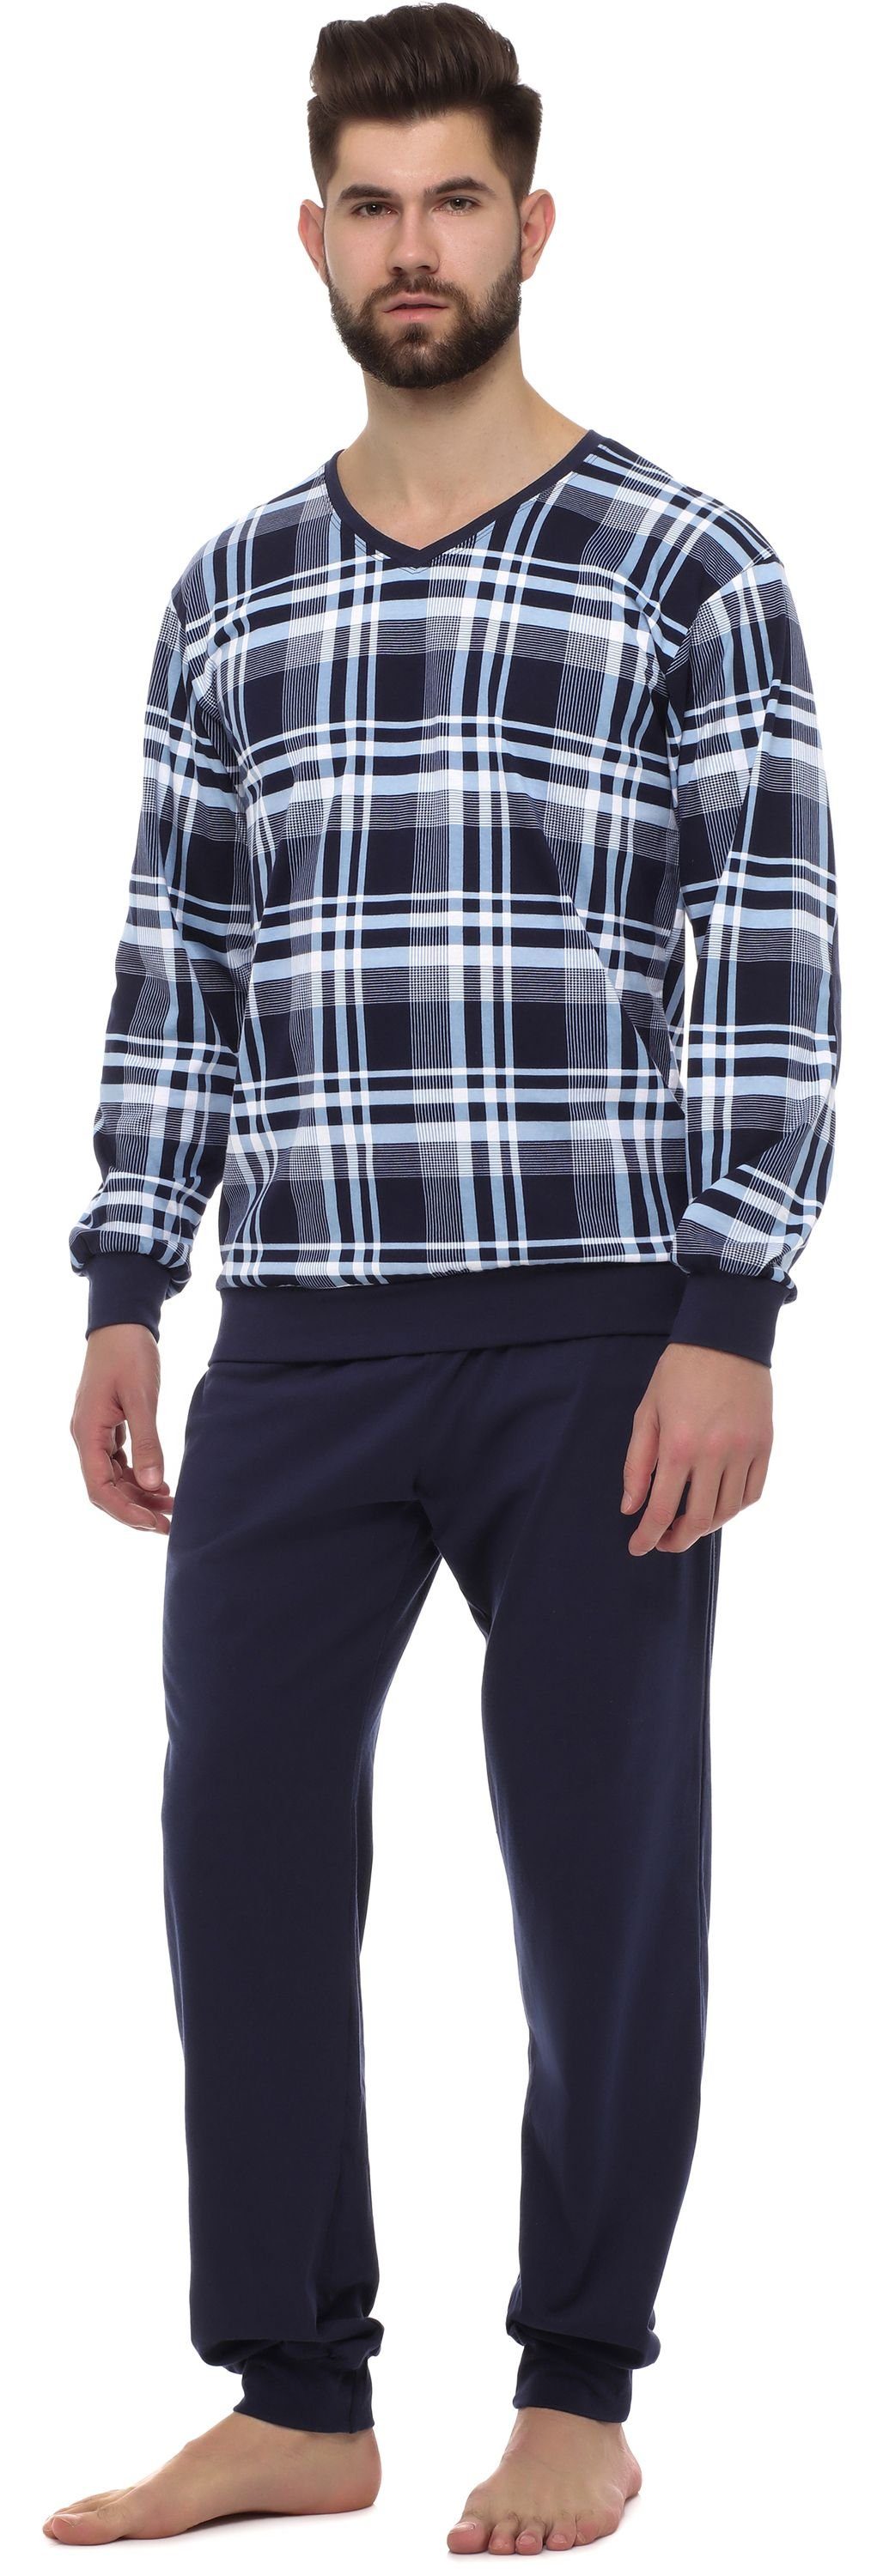 Timone Schlafanzug TI30-107 9555408 Herren Schlafanzug Lang Bündchen Baumwolle Set Marine mit Nightwear